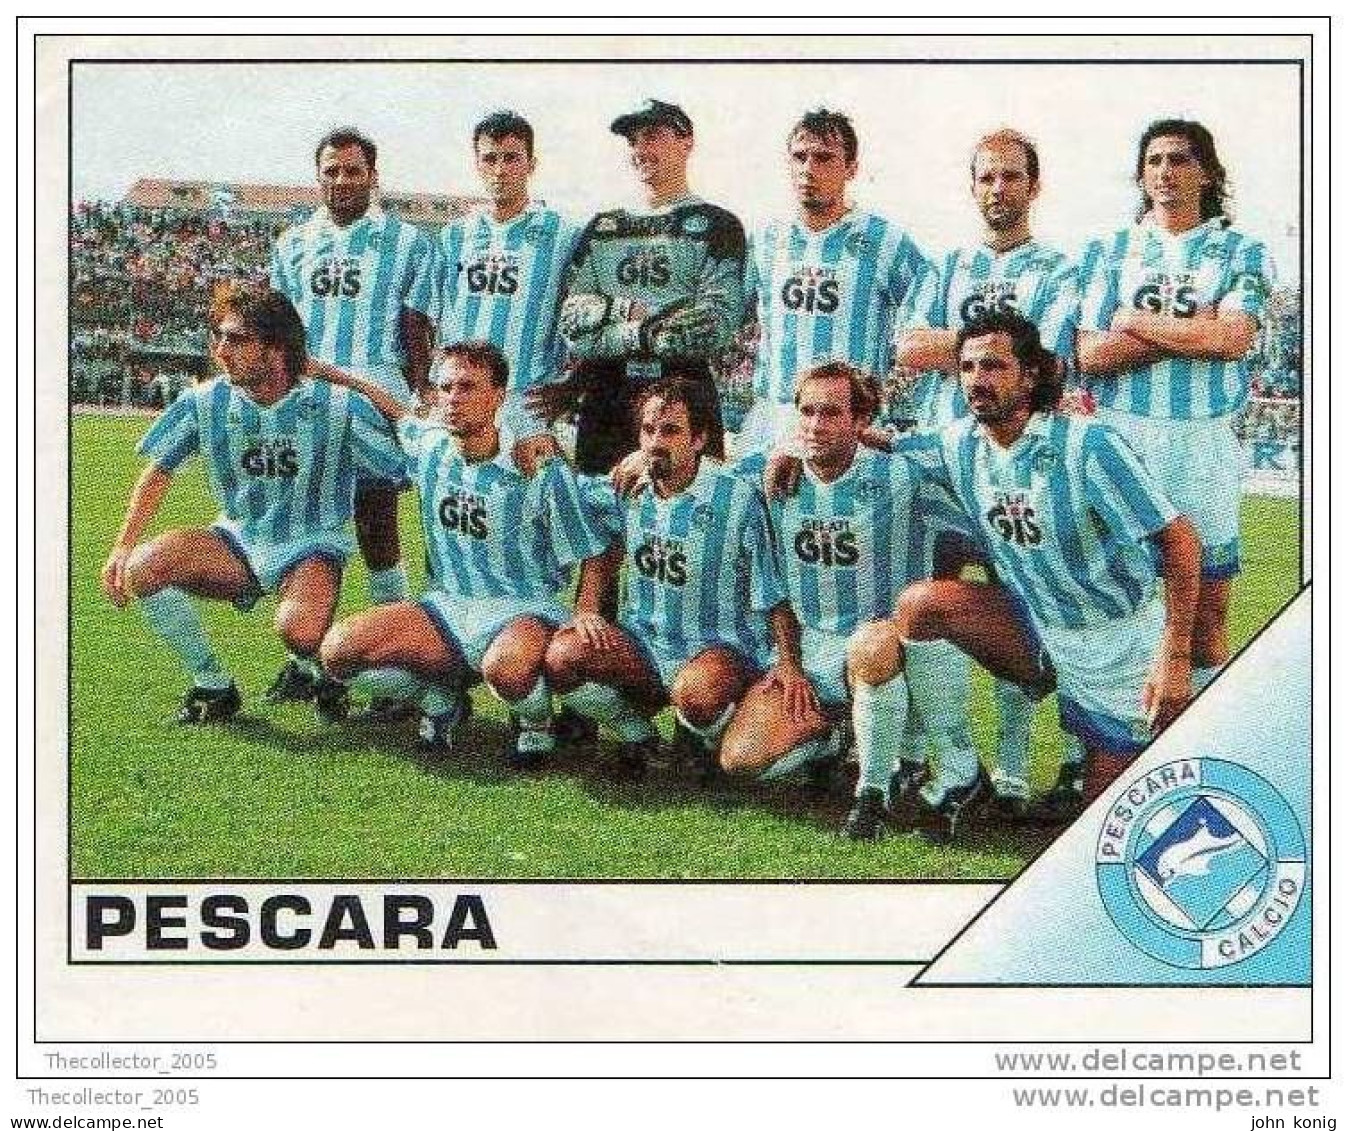 CALCIATORI - CALCIO Figurine Panini-calciatori 1995-96-n.460 (Pescara) - NUOVA-MAI INCOLLATA - Italian Edition